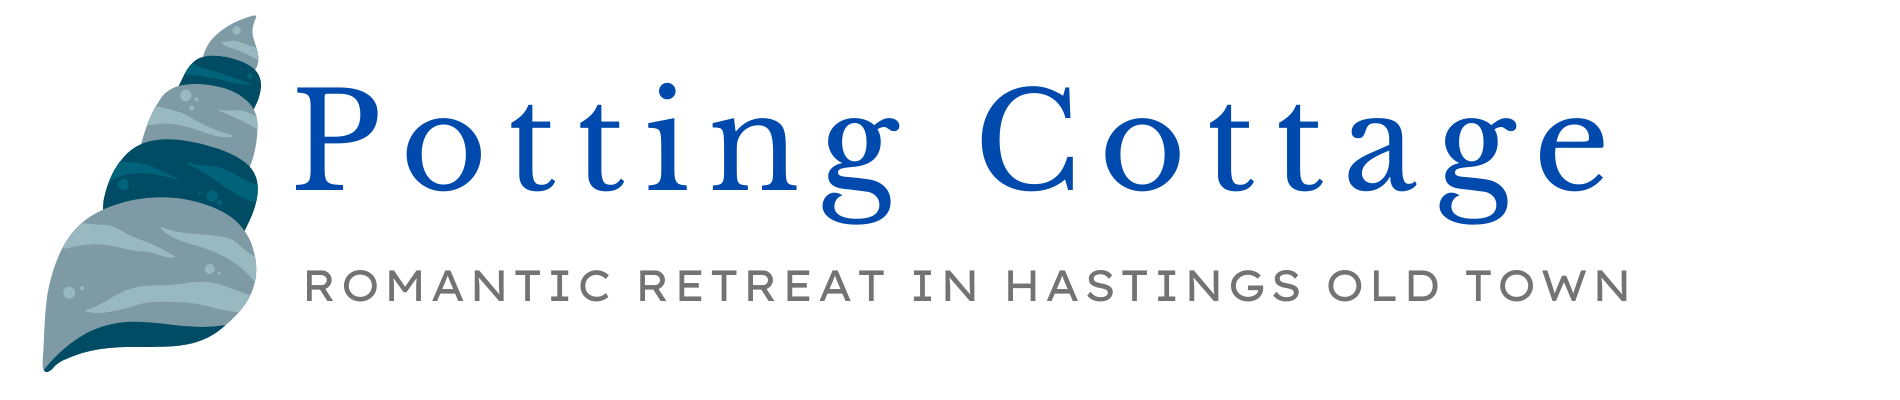 Potting Cottage Logo